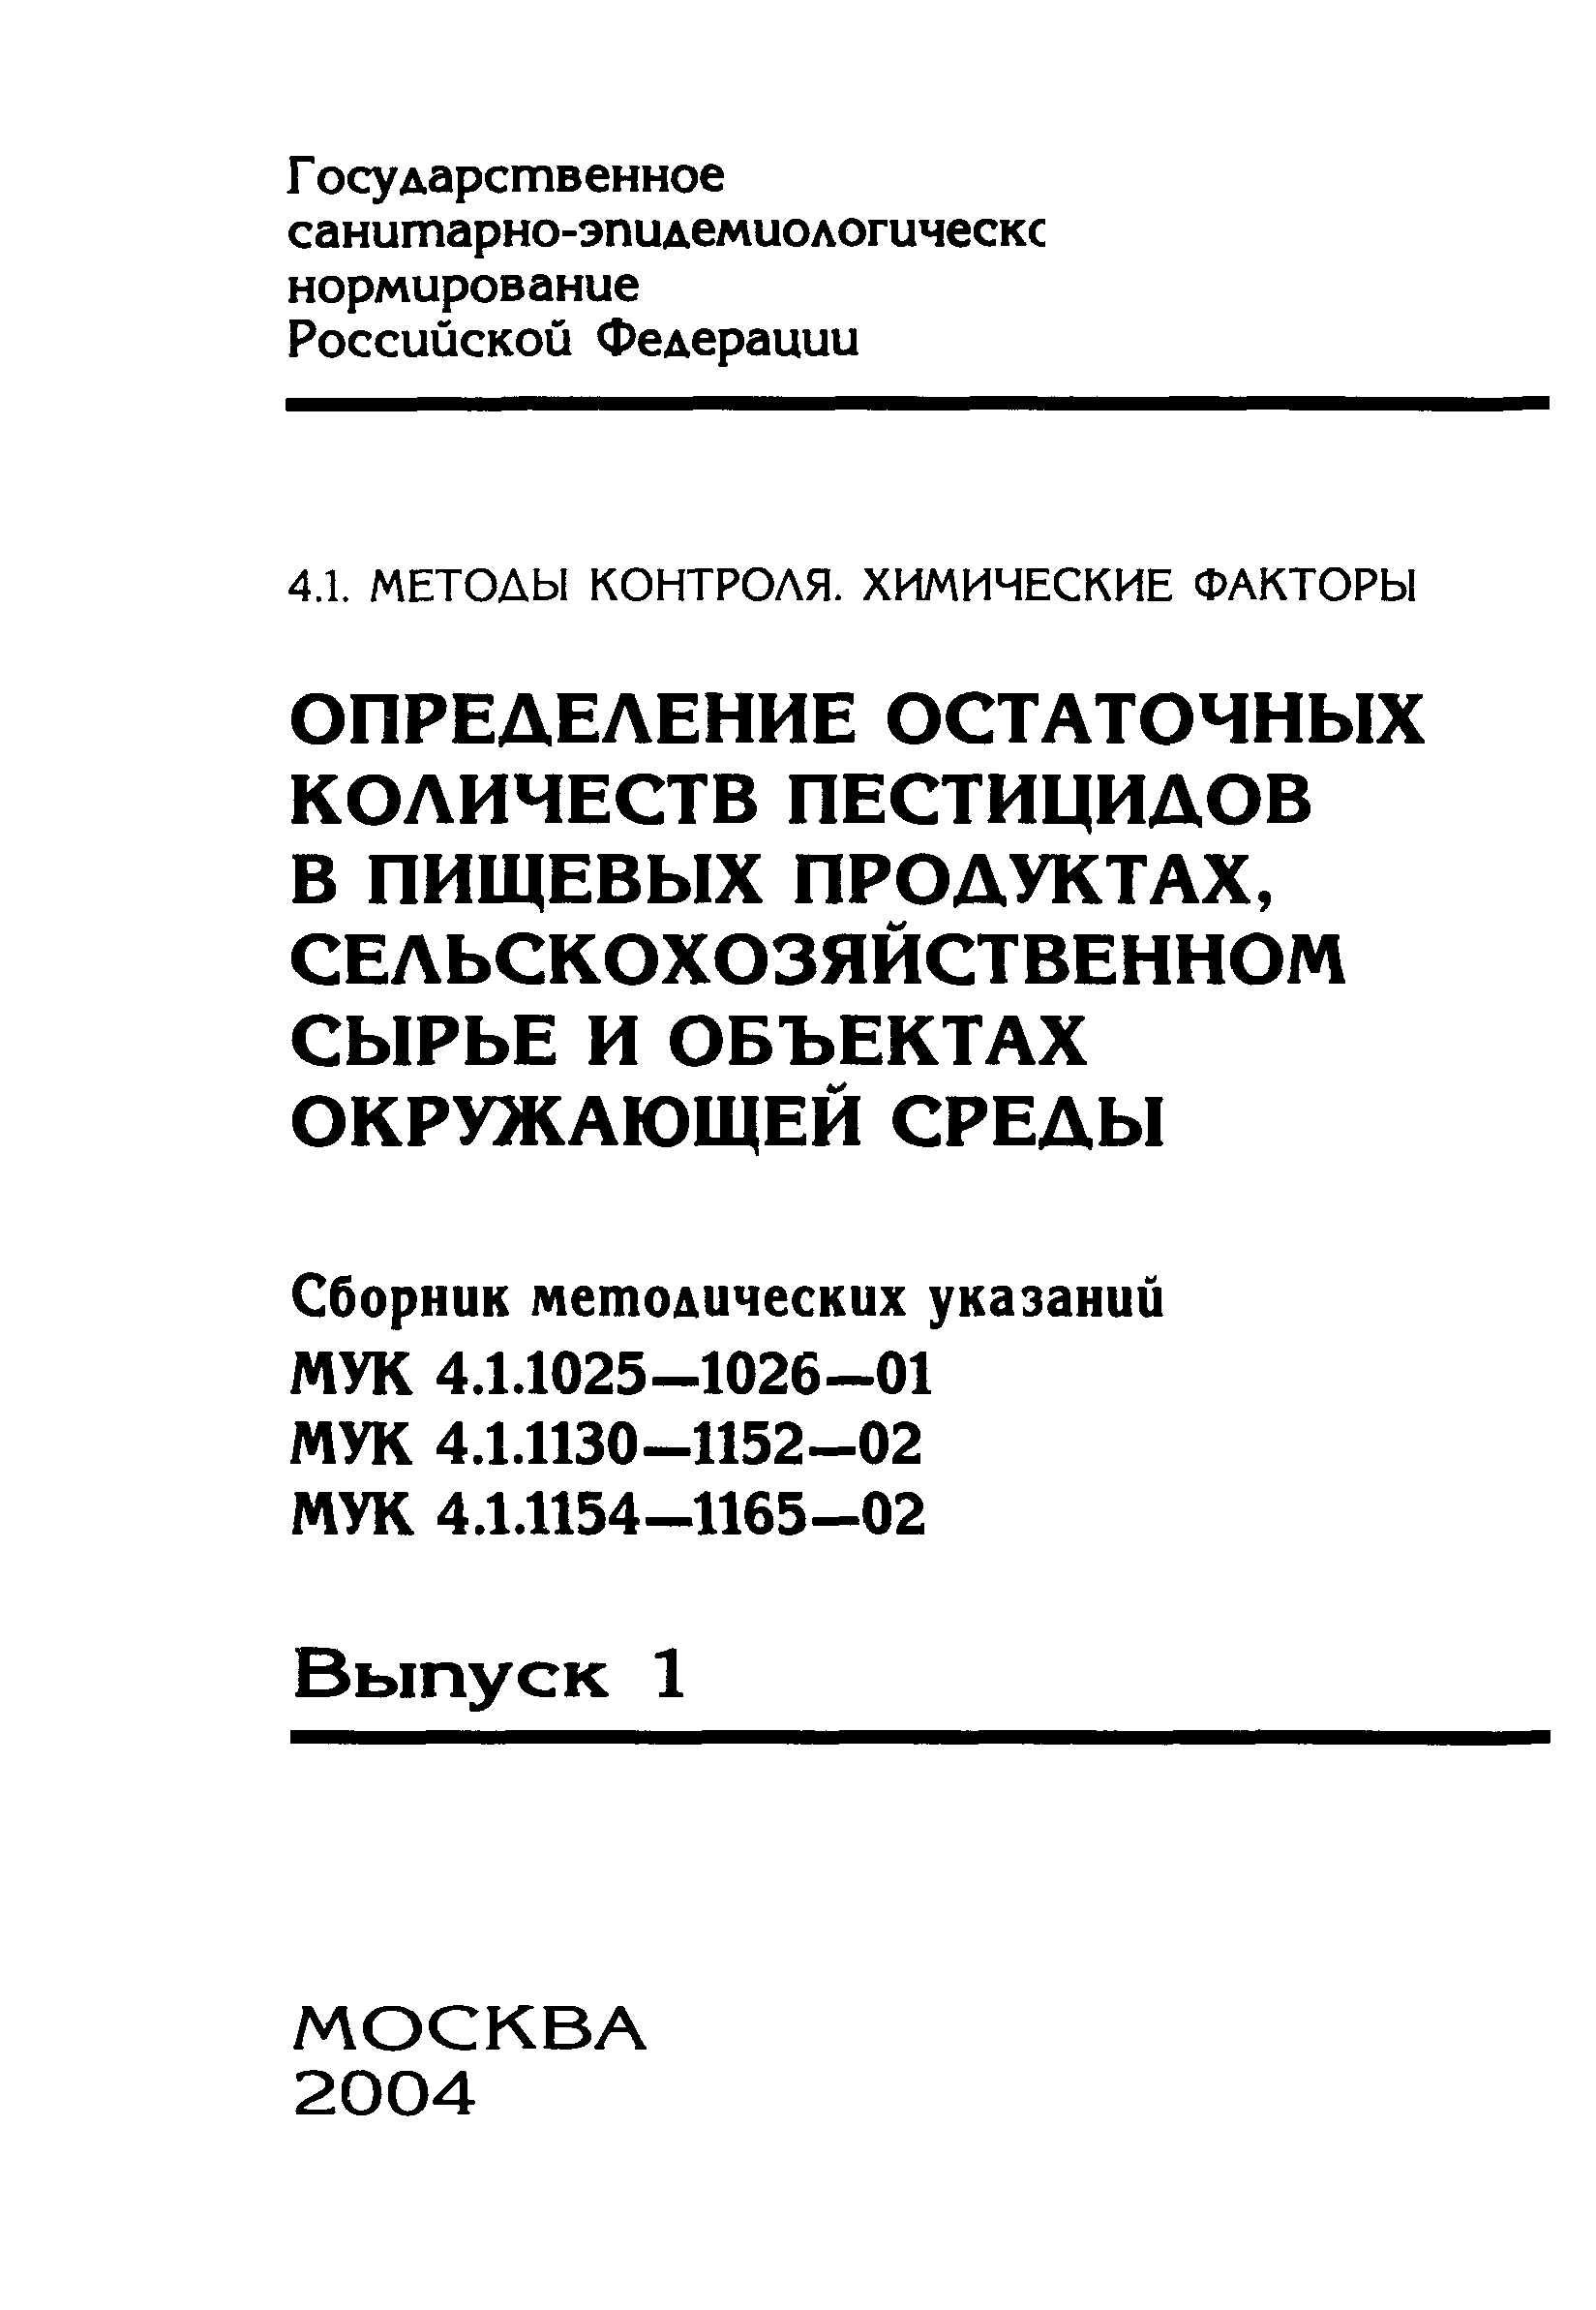 МУК 4.1.1137-02